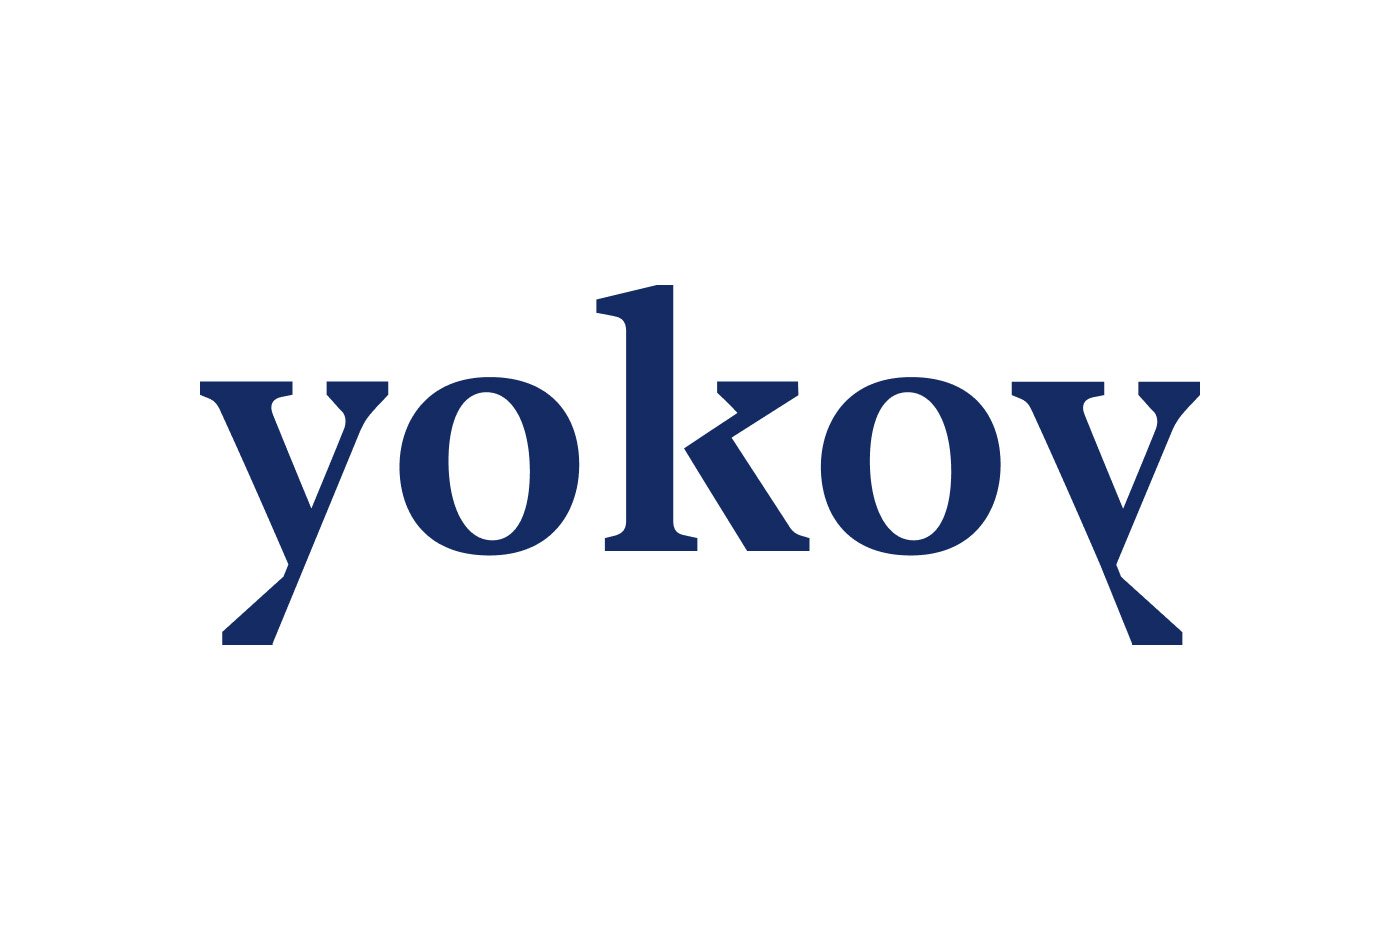 yokoy logo.jpeg